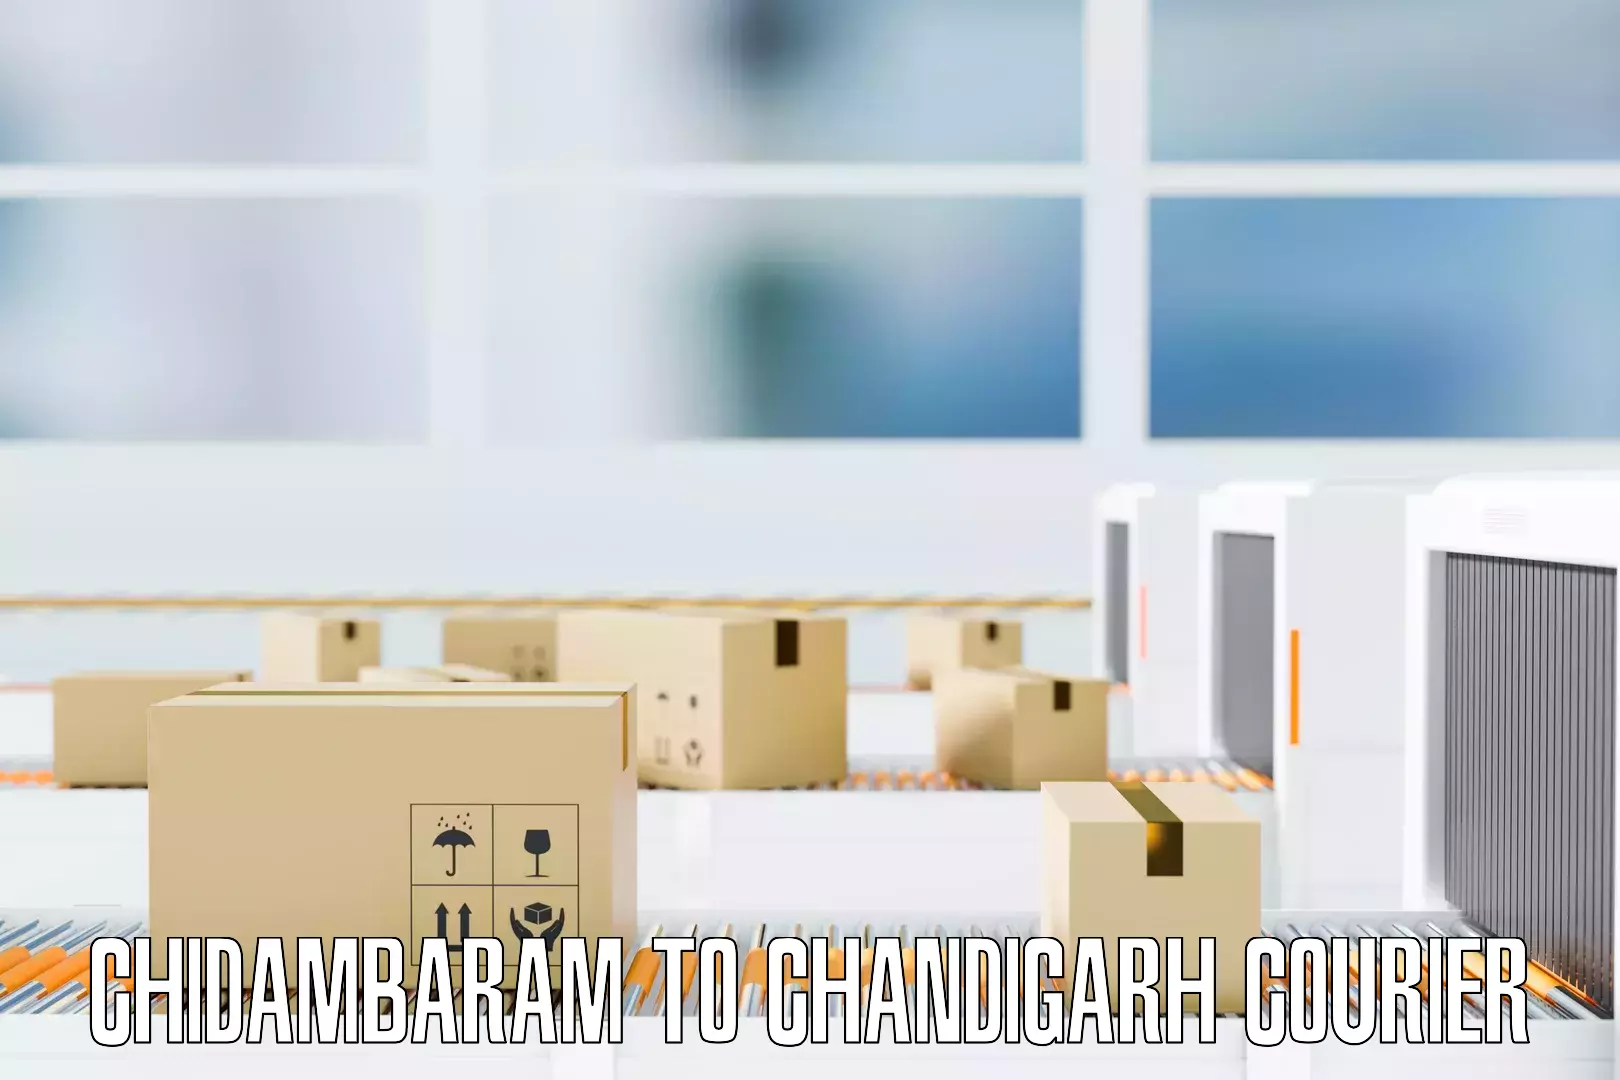 Comprehensive home shifting Chidambaram to Chandigarh